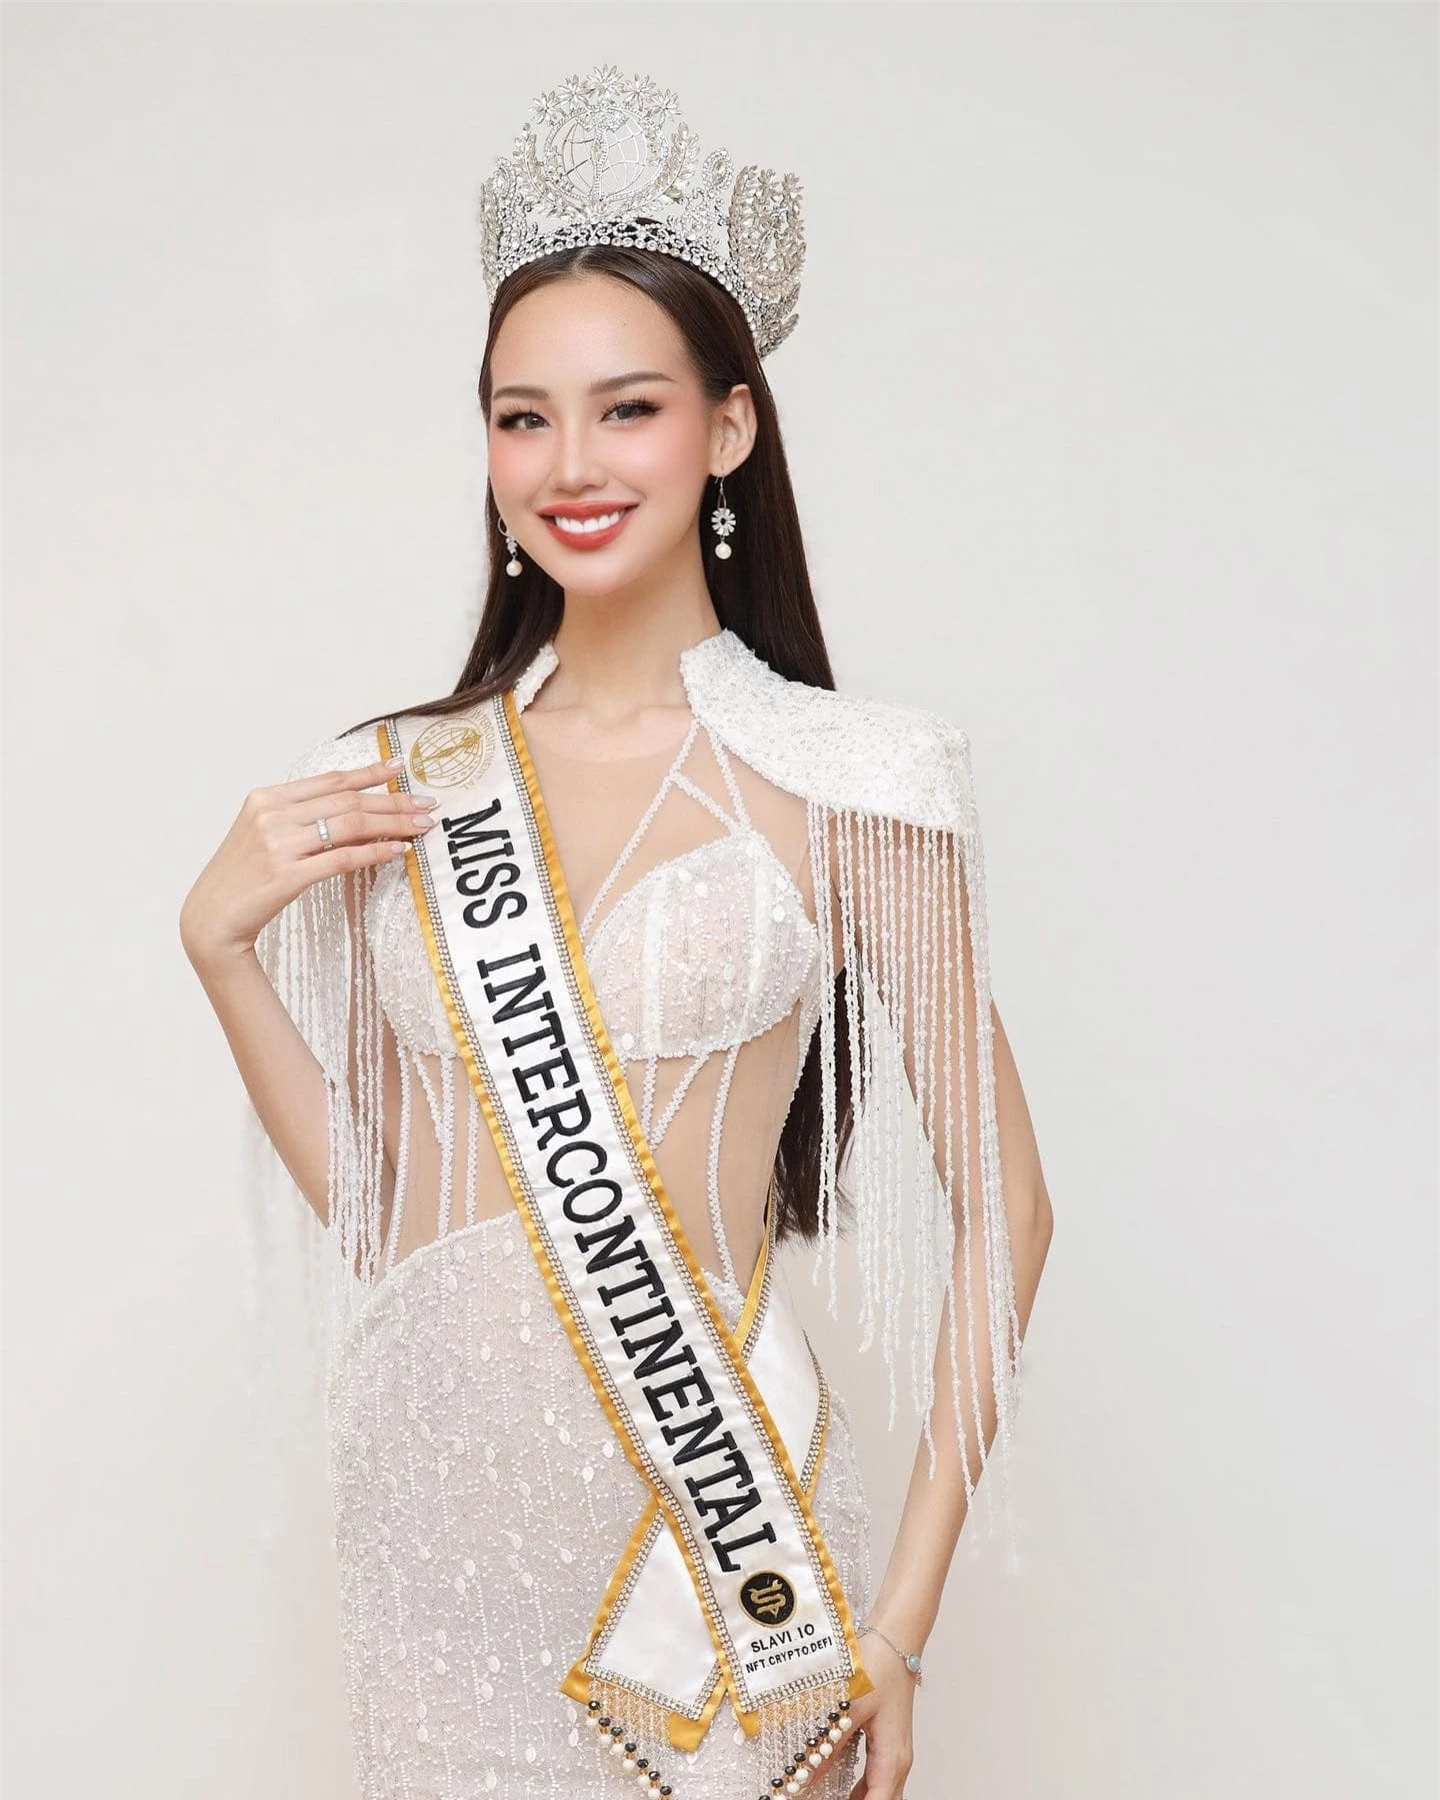 Bảo Ngọc mặc táo bạo khi sắp hết nhiệm kỳ Hoa hậu Liên lục địa ảnh 7